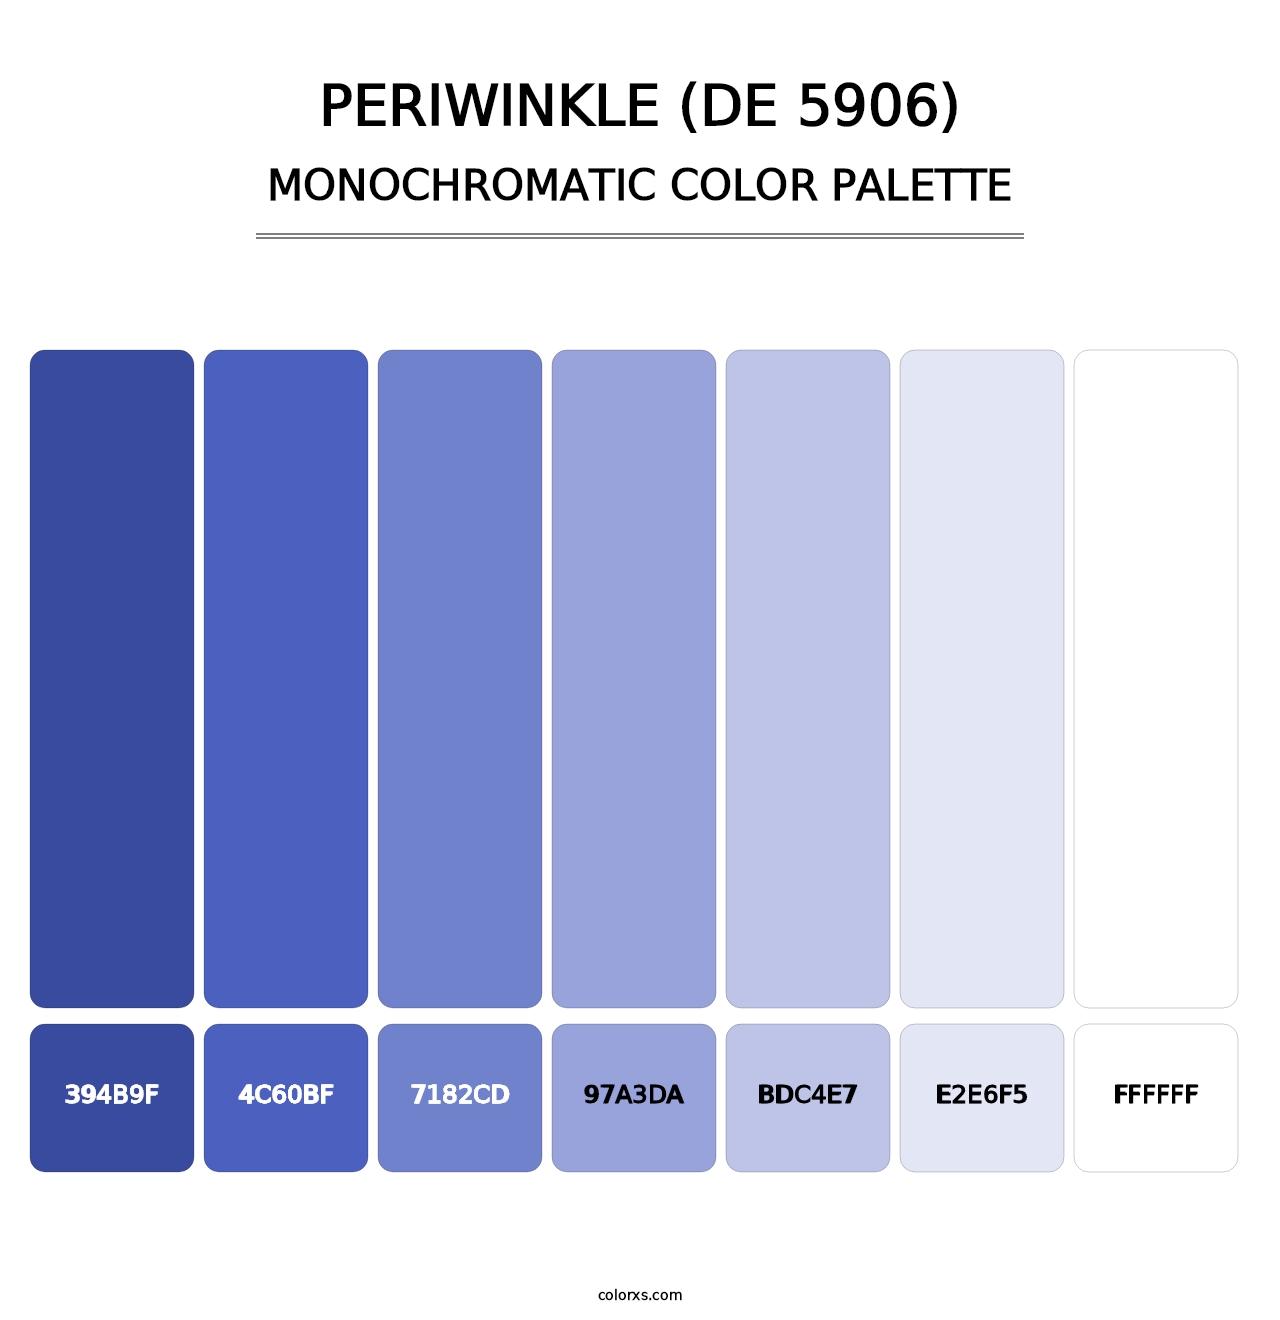 Periwinkle (DE 5906) - Monochromatic Color Palette